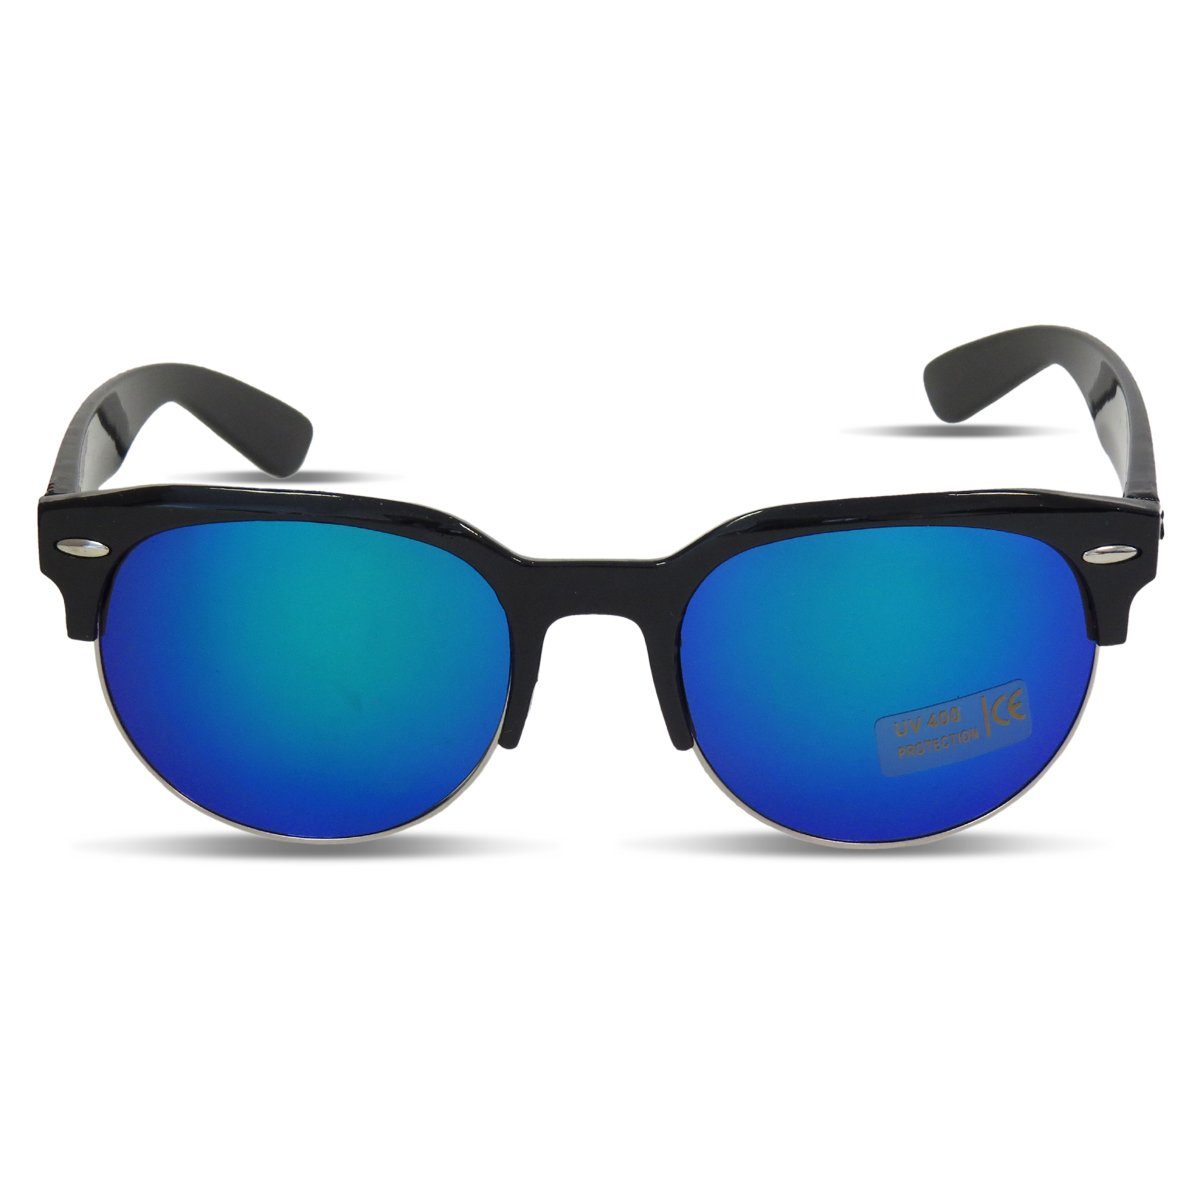 Sonia Originelli Sonnenbrille Sonnenbrille Modern Verspiegelt Klassisch Sommer Onesize schwarz-blau